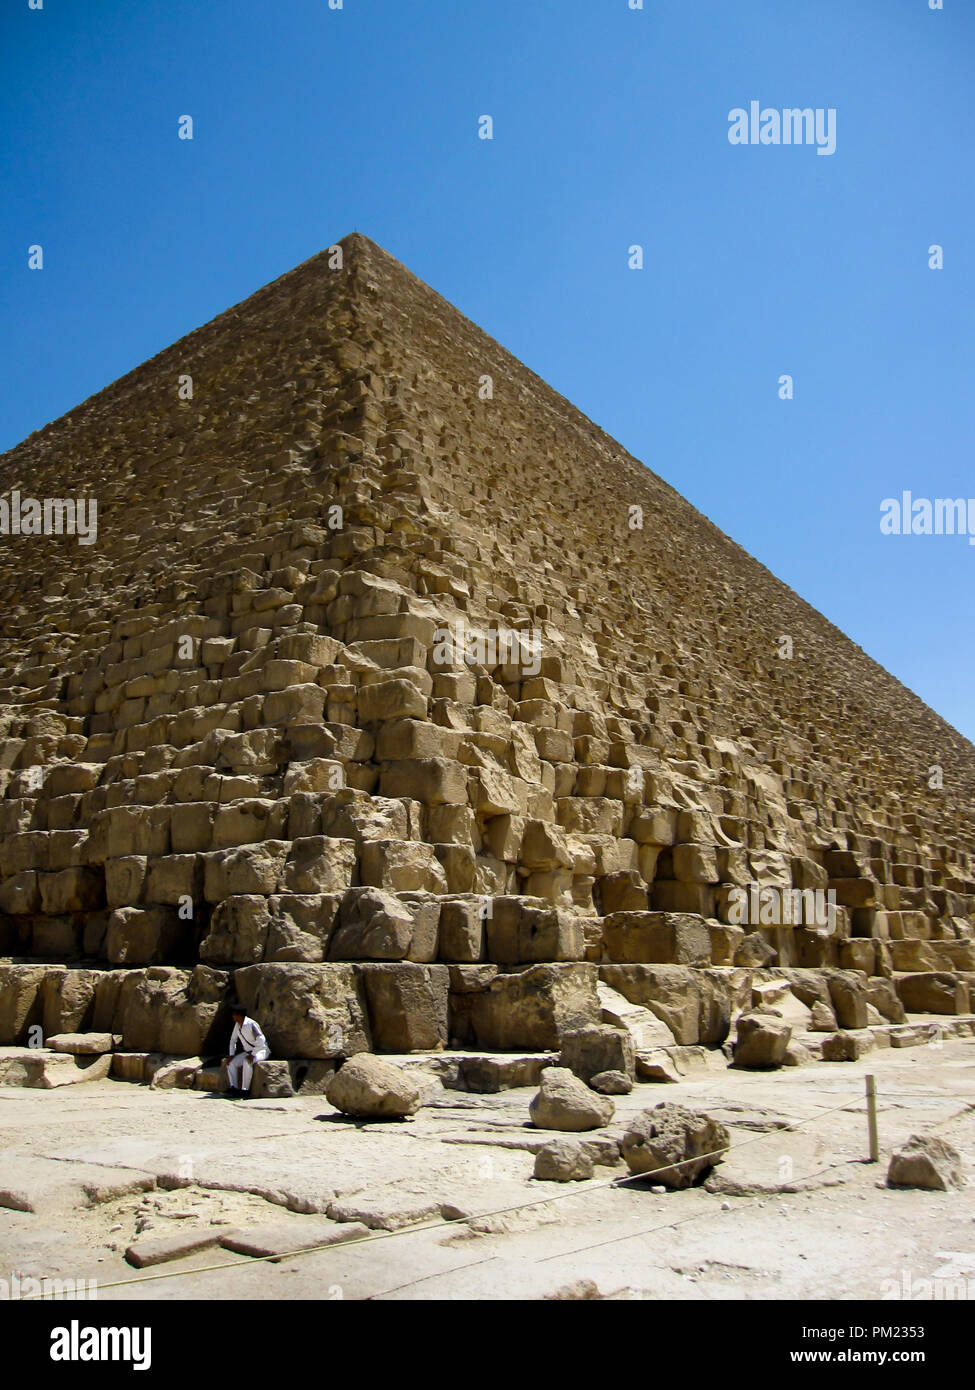 La grande pyramide de Gizeh, également connu sous le nom de Khufu ou Khéops, une importante destination touristique et site archéologique de Gizeh, Egypte Banque D'Images